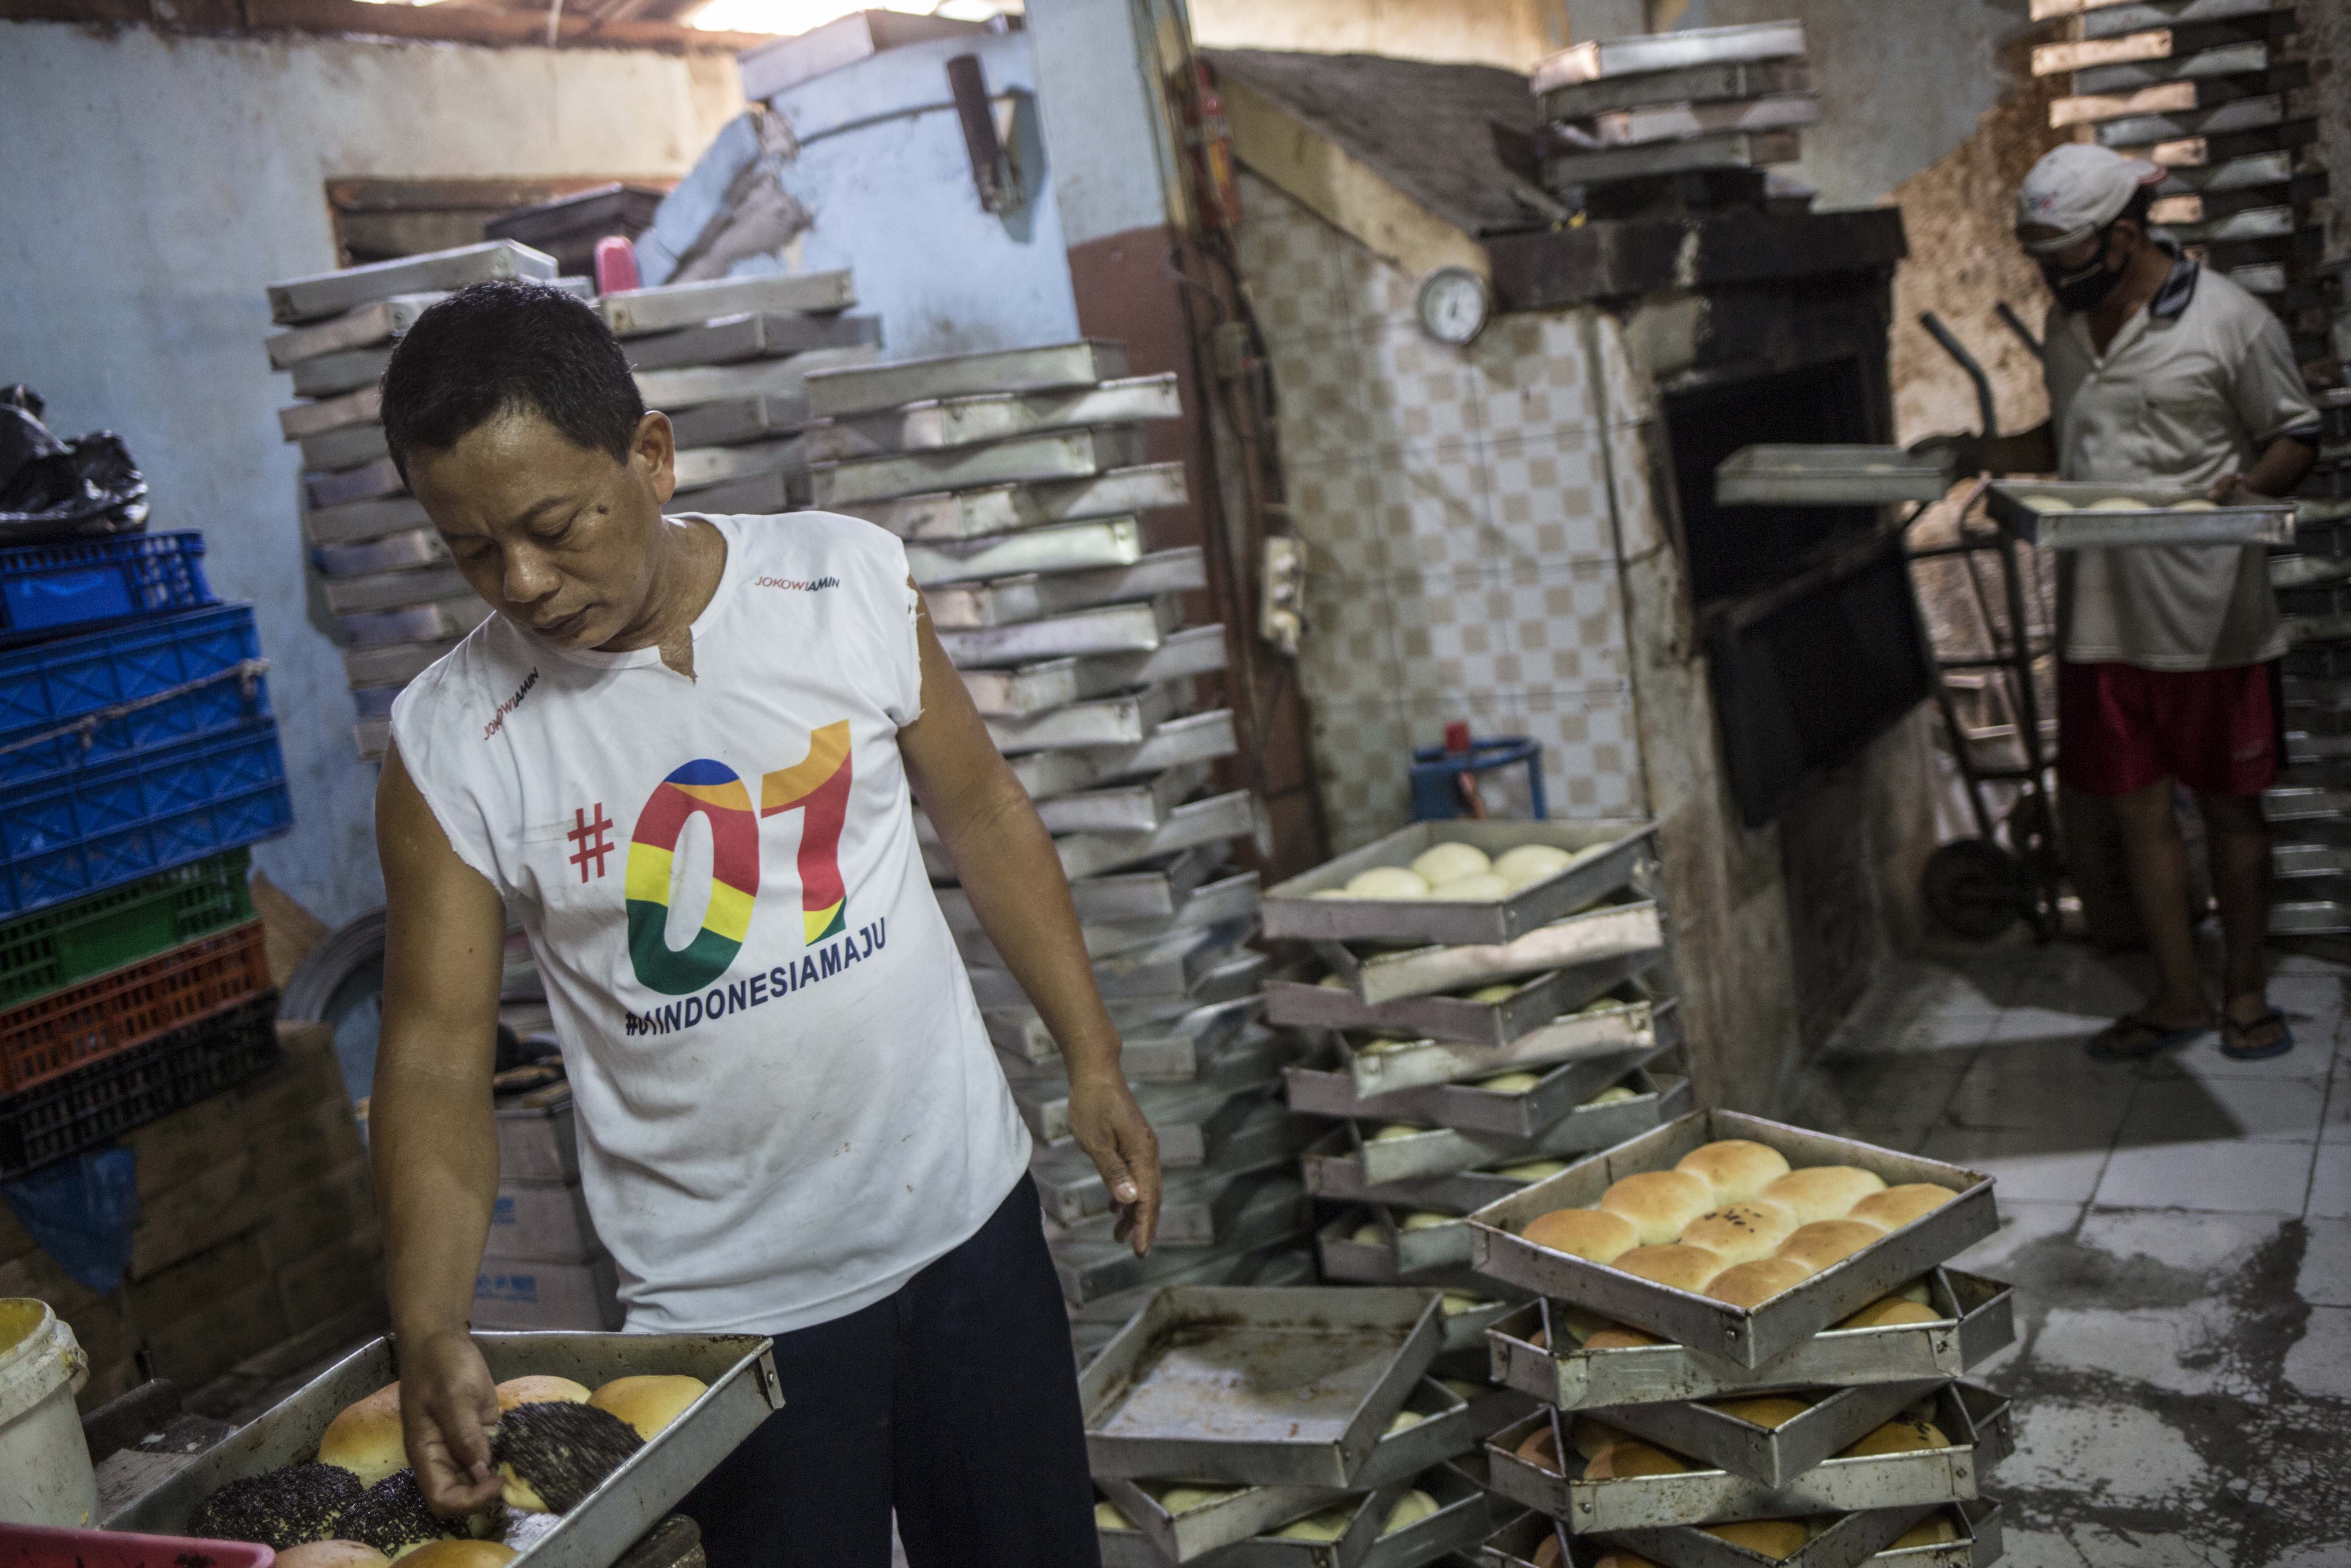 Pekerja menyelesaikan pembuatan roti skala rumahan di kawasan Bendungan Hilir, Jakarta, Rabu (1/7/2020). Menurut pekerja sebelum pandemi Covid-19 mereka mampu membuat hingga 4.000-5.000 roti per hari, namun saat ini pembuatan hanya 1.000 roti per hari karena masih banyaknya warga yang beraktivitas dirumah dan mengakibatkan penurunan omset.